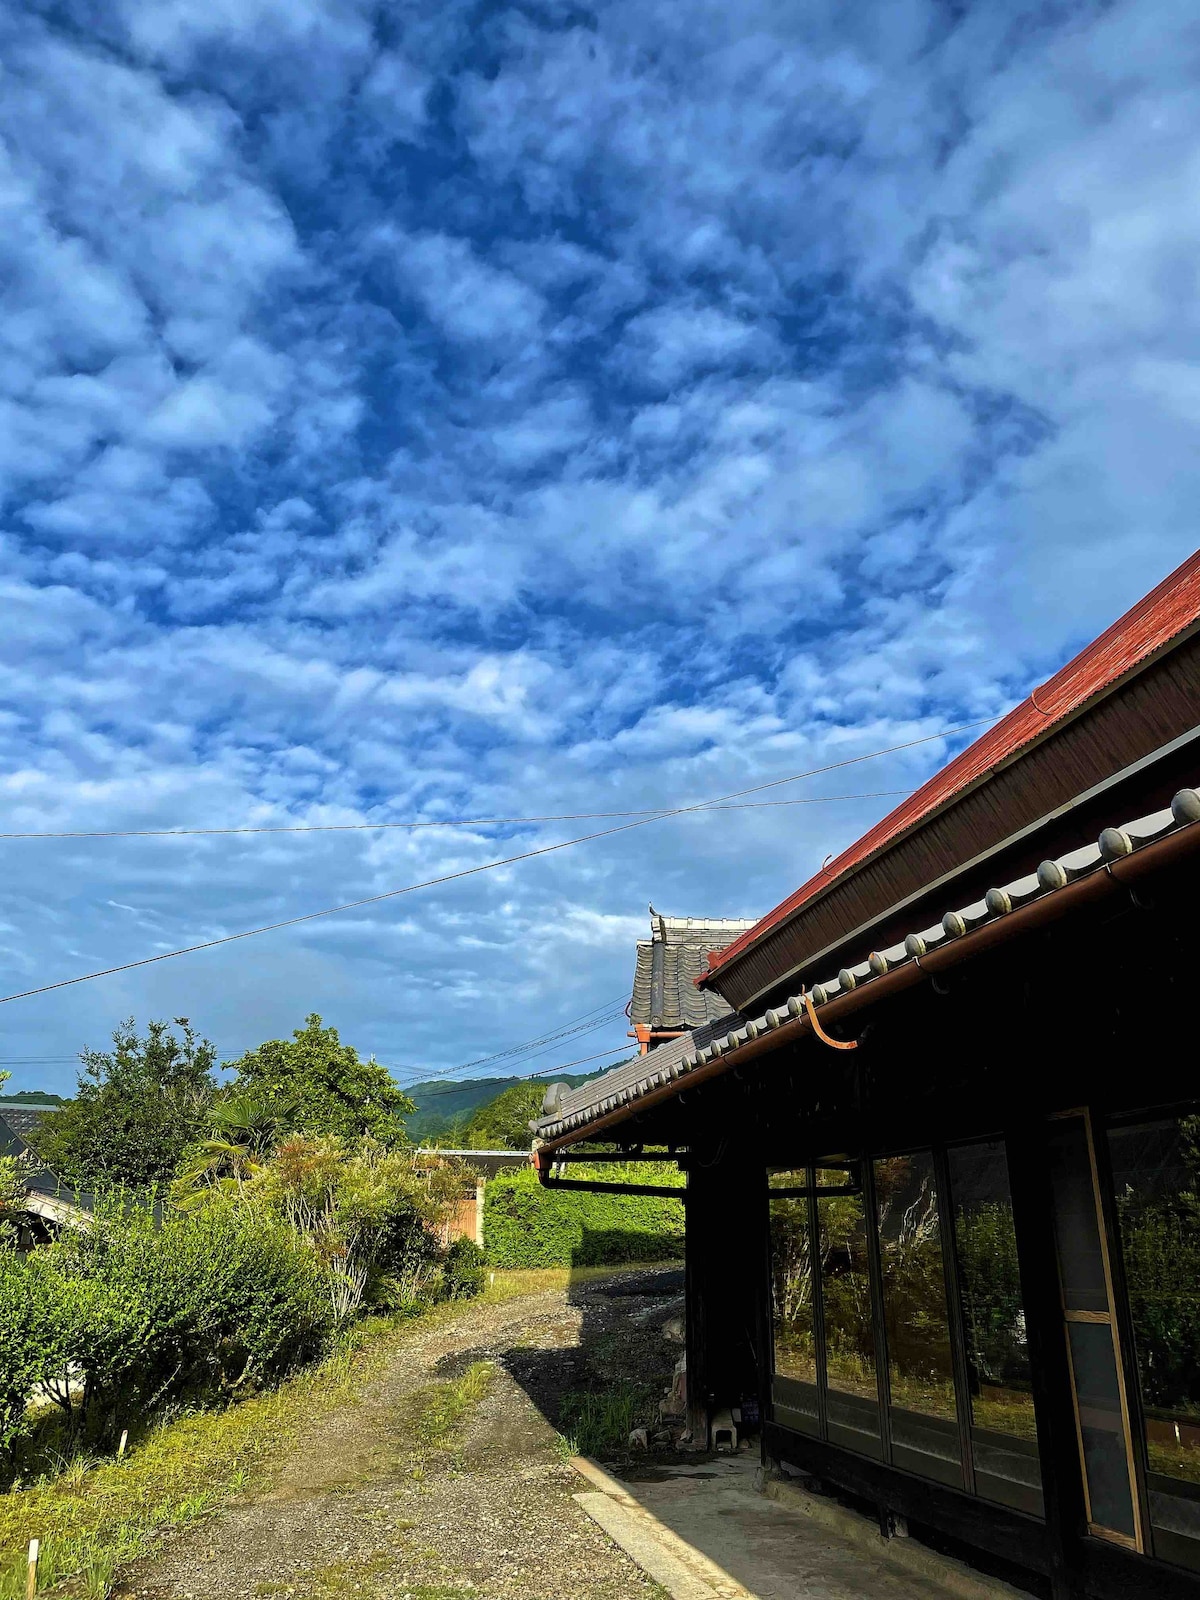 KEHARAHOUSE乡村客房
放松~感受乡村风情。距离奈良公园60分钟车程。